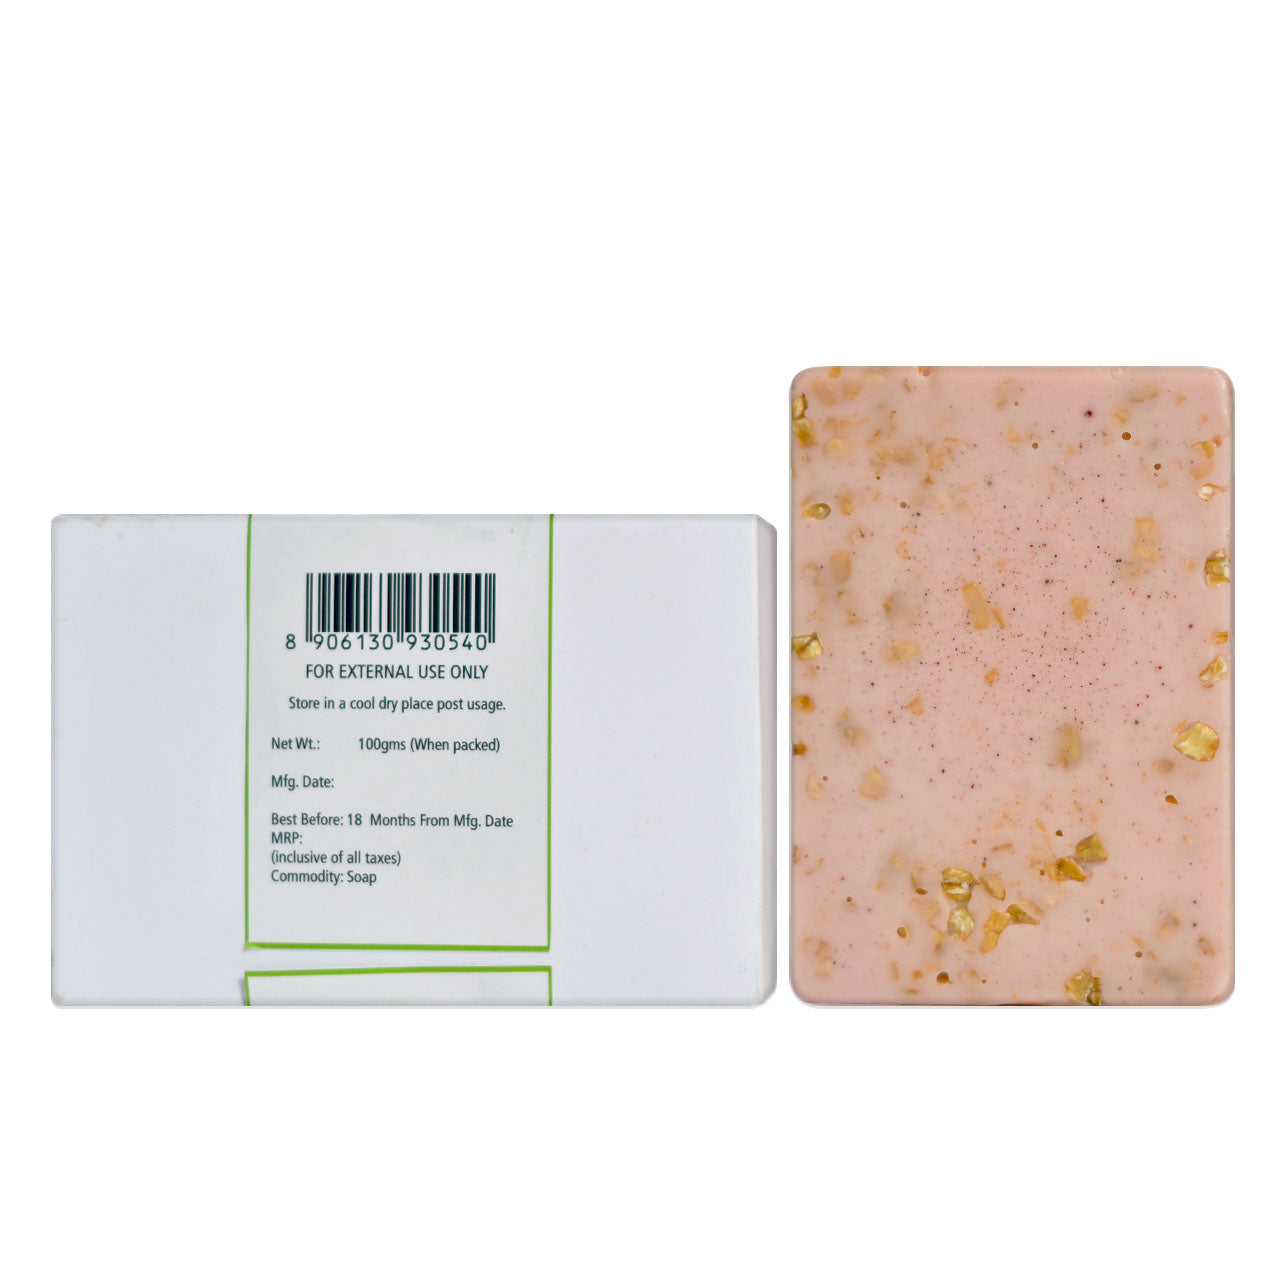 Spa Soap - Kaolin Clay, Oats, Rose and Vanilla